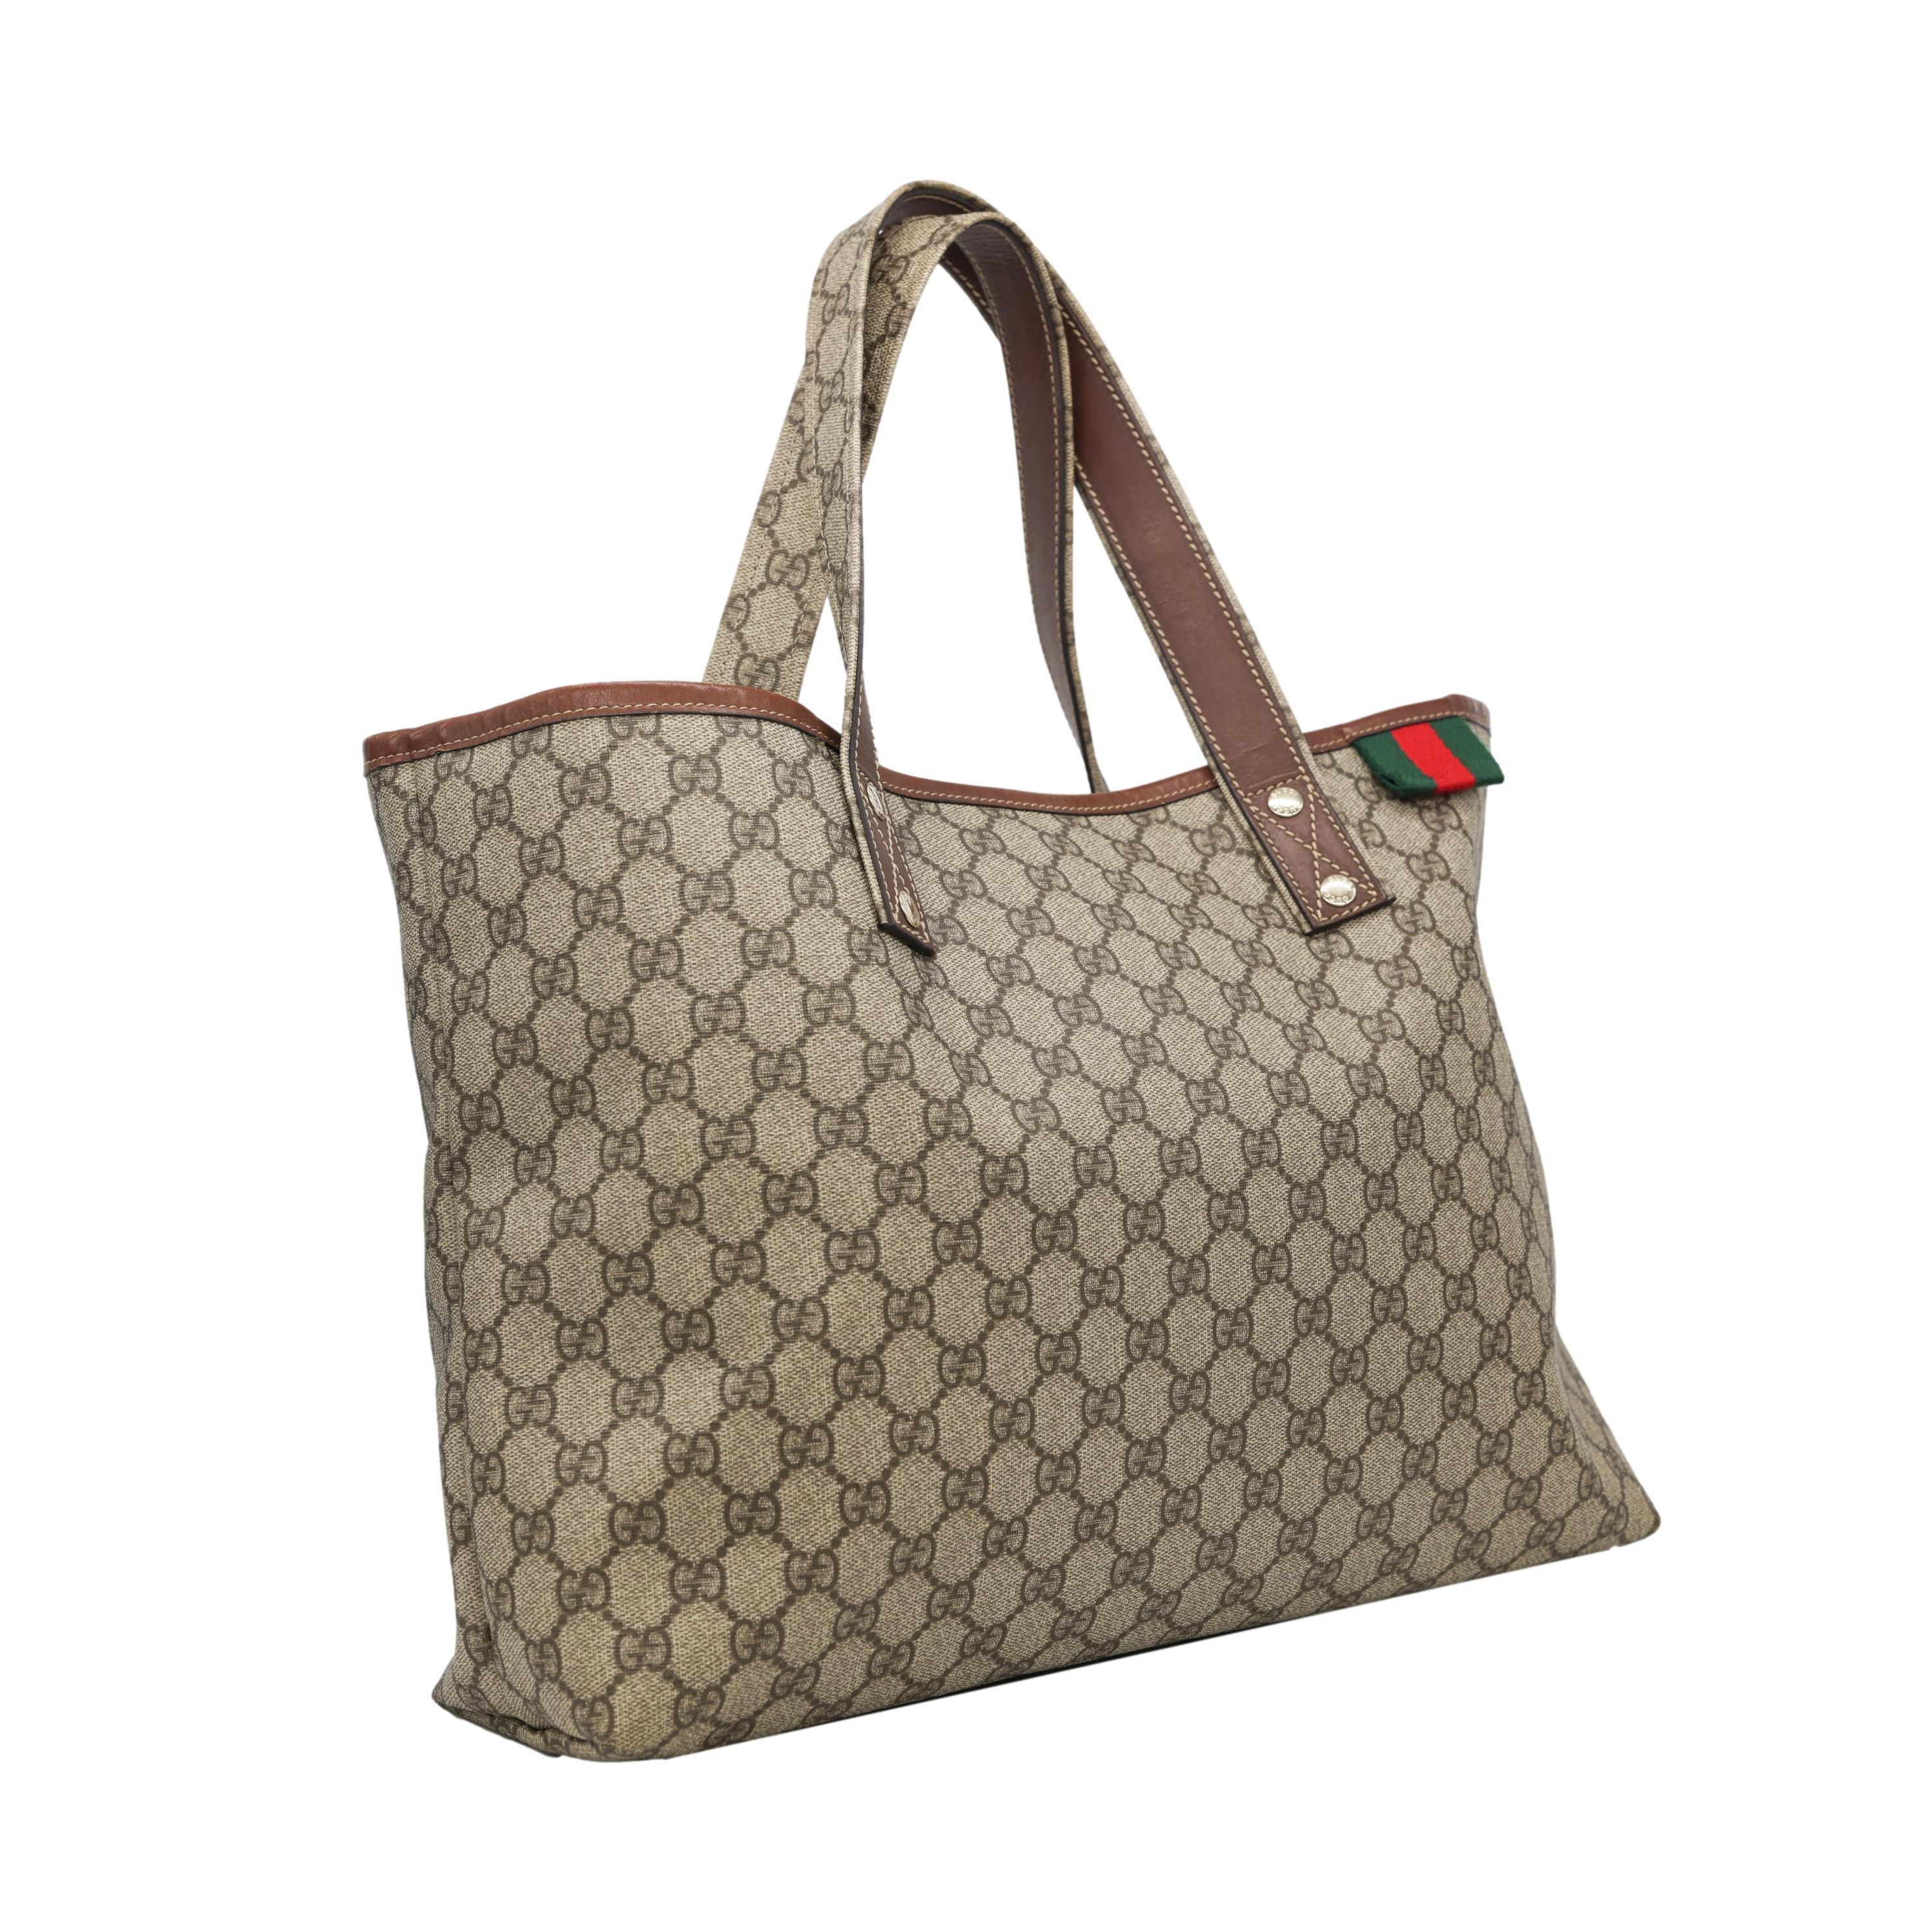 Gucci GG Monogram Supreme Brown Canvas Medium Shelly Tote Bag. This classic Gucci Tote 